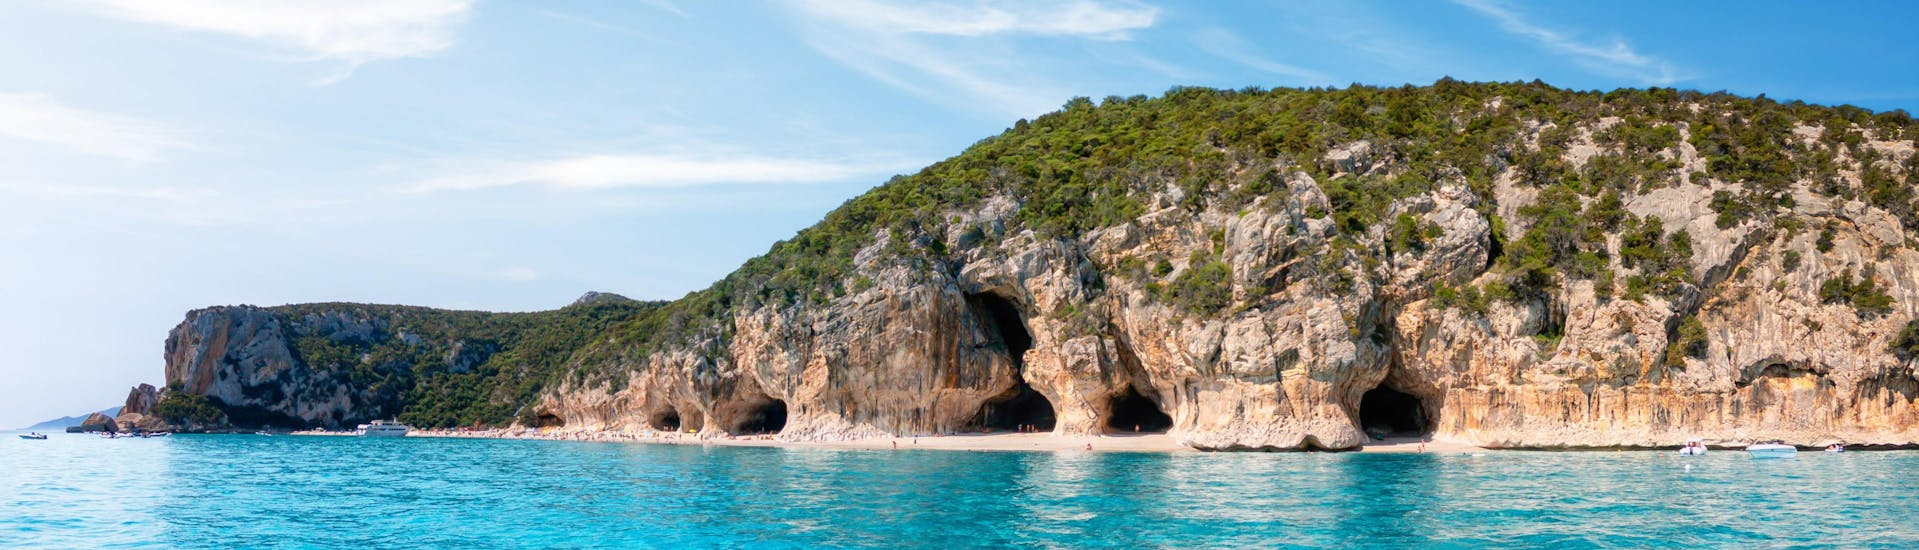 Immagine delle grotte lungo la costa di Cala Luna, in Sardegna, una destinazione popolare per le gite in barca.